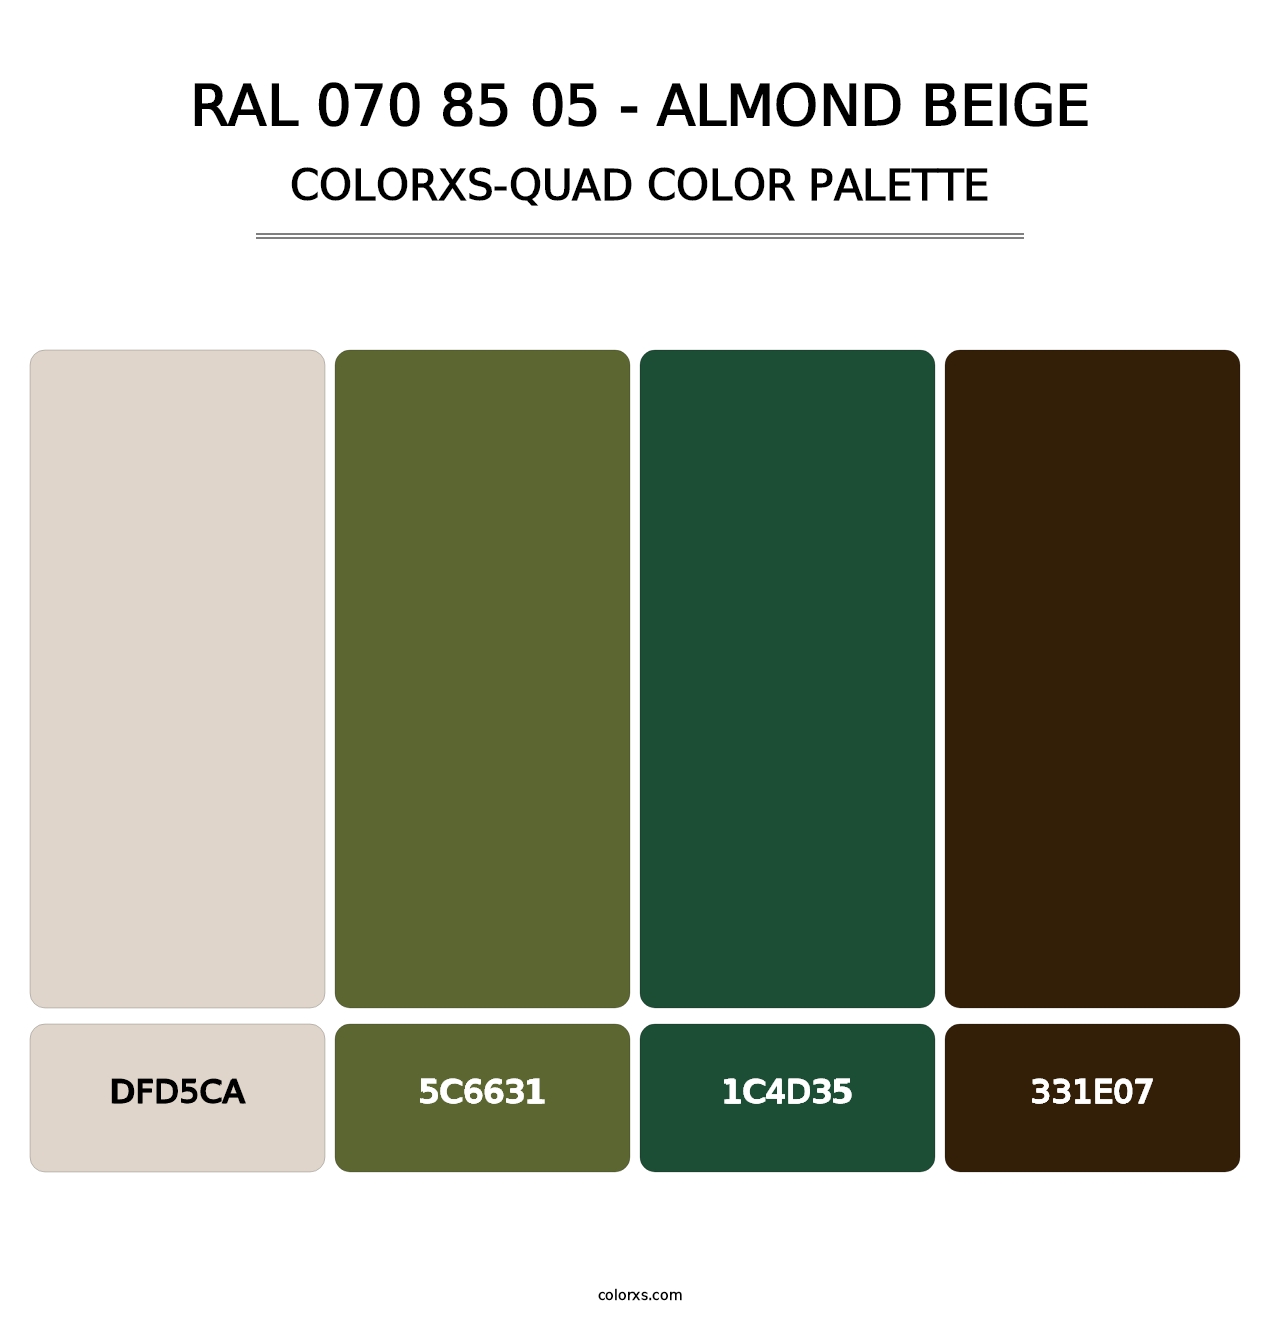 RAL 070 85 05 - Almond Beige - Colorxs Quad Palette